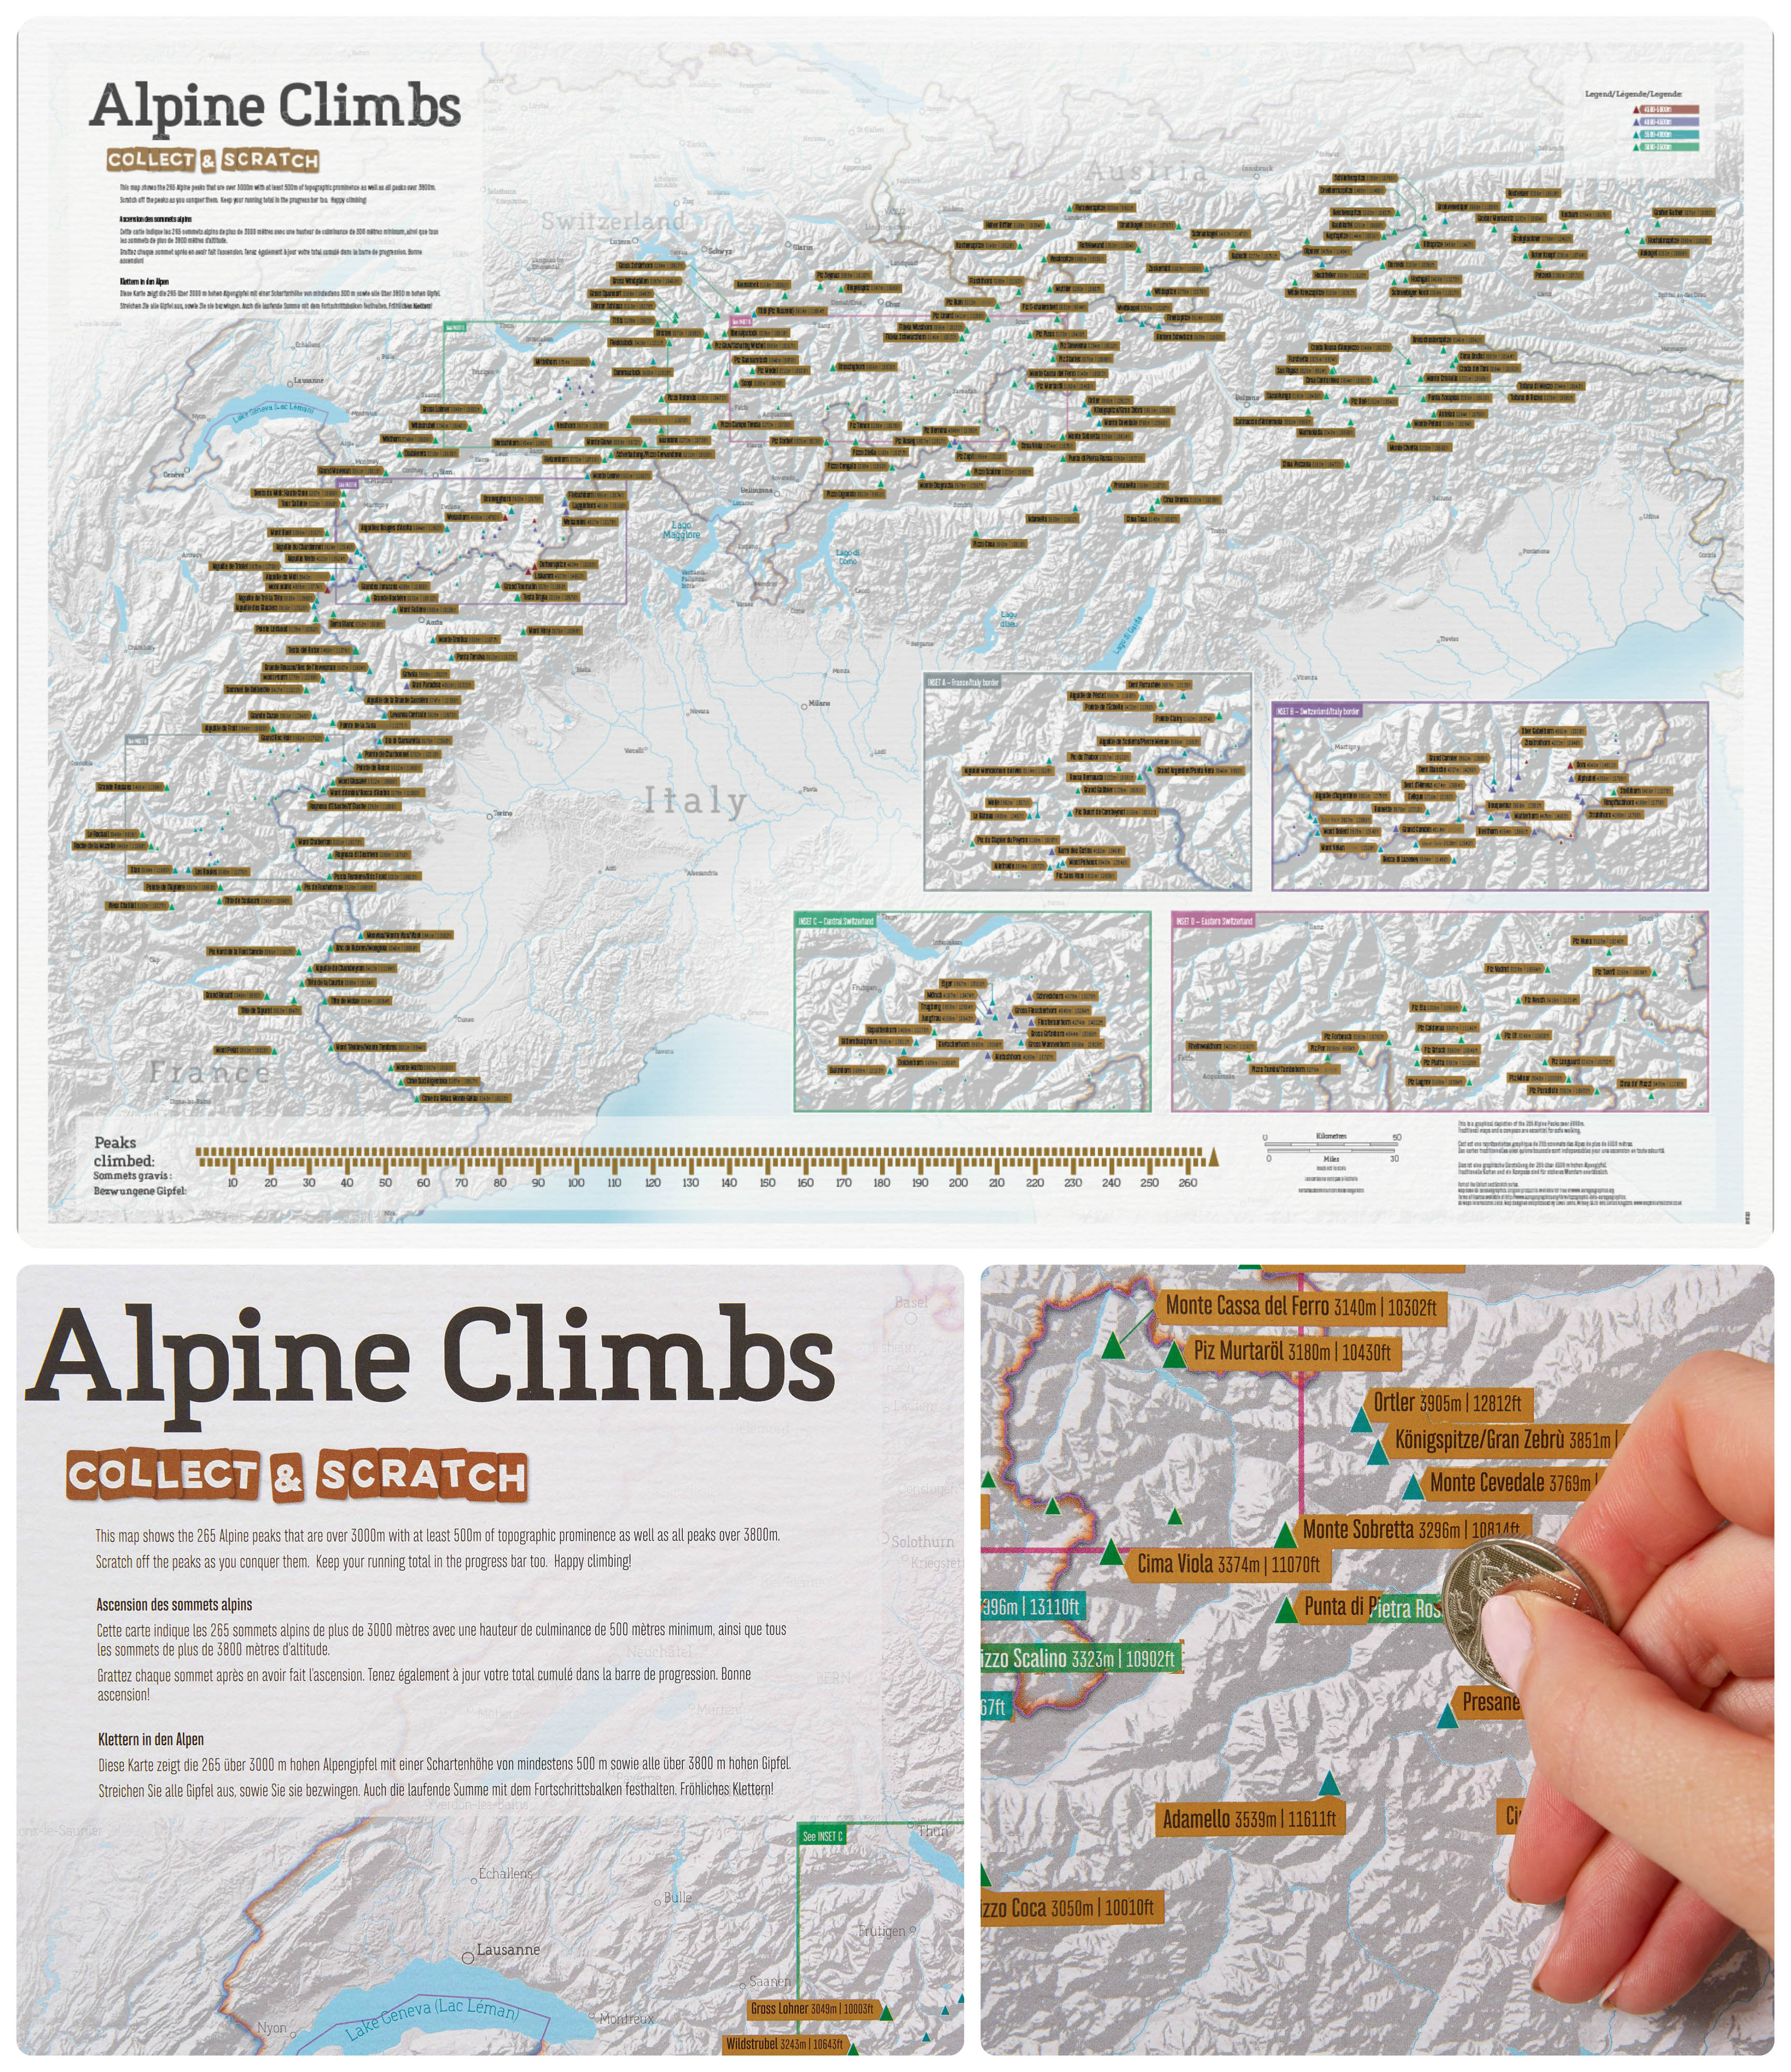 Alpine Climbs Collect & Scratch